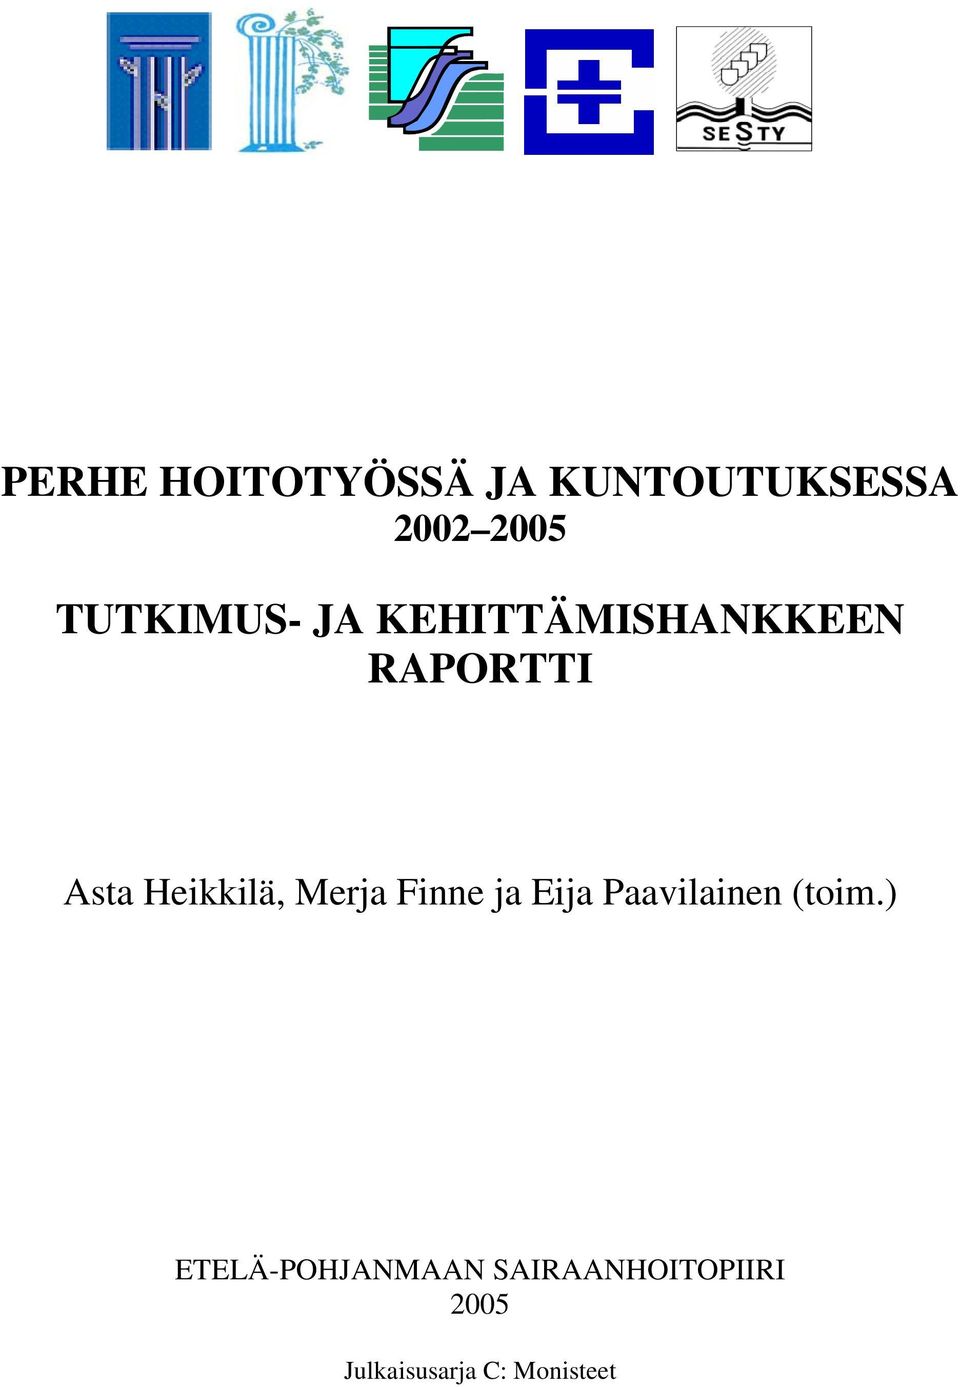 Heikkilä, Merja Finne ja Eija Paavilainen (toim.